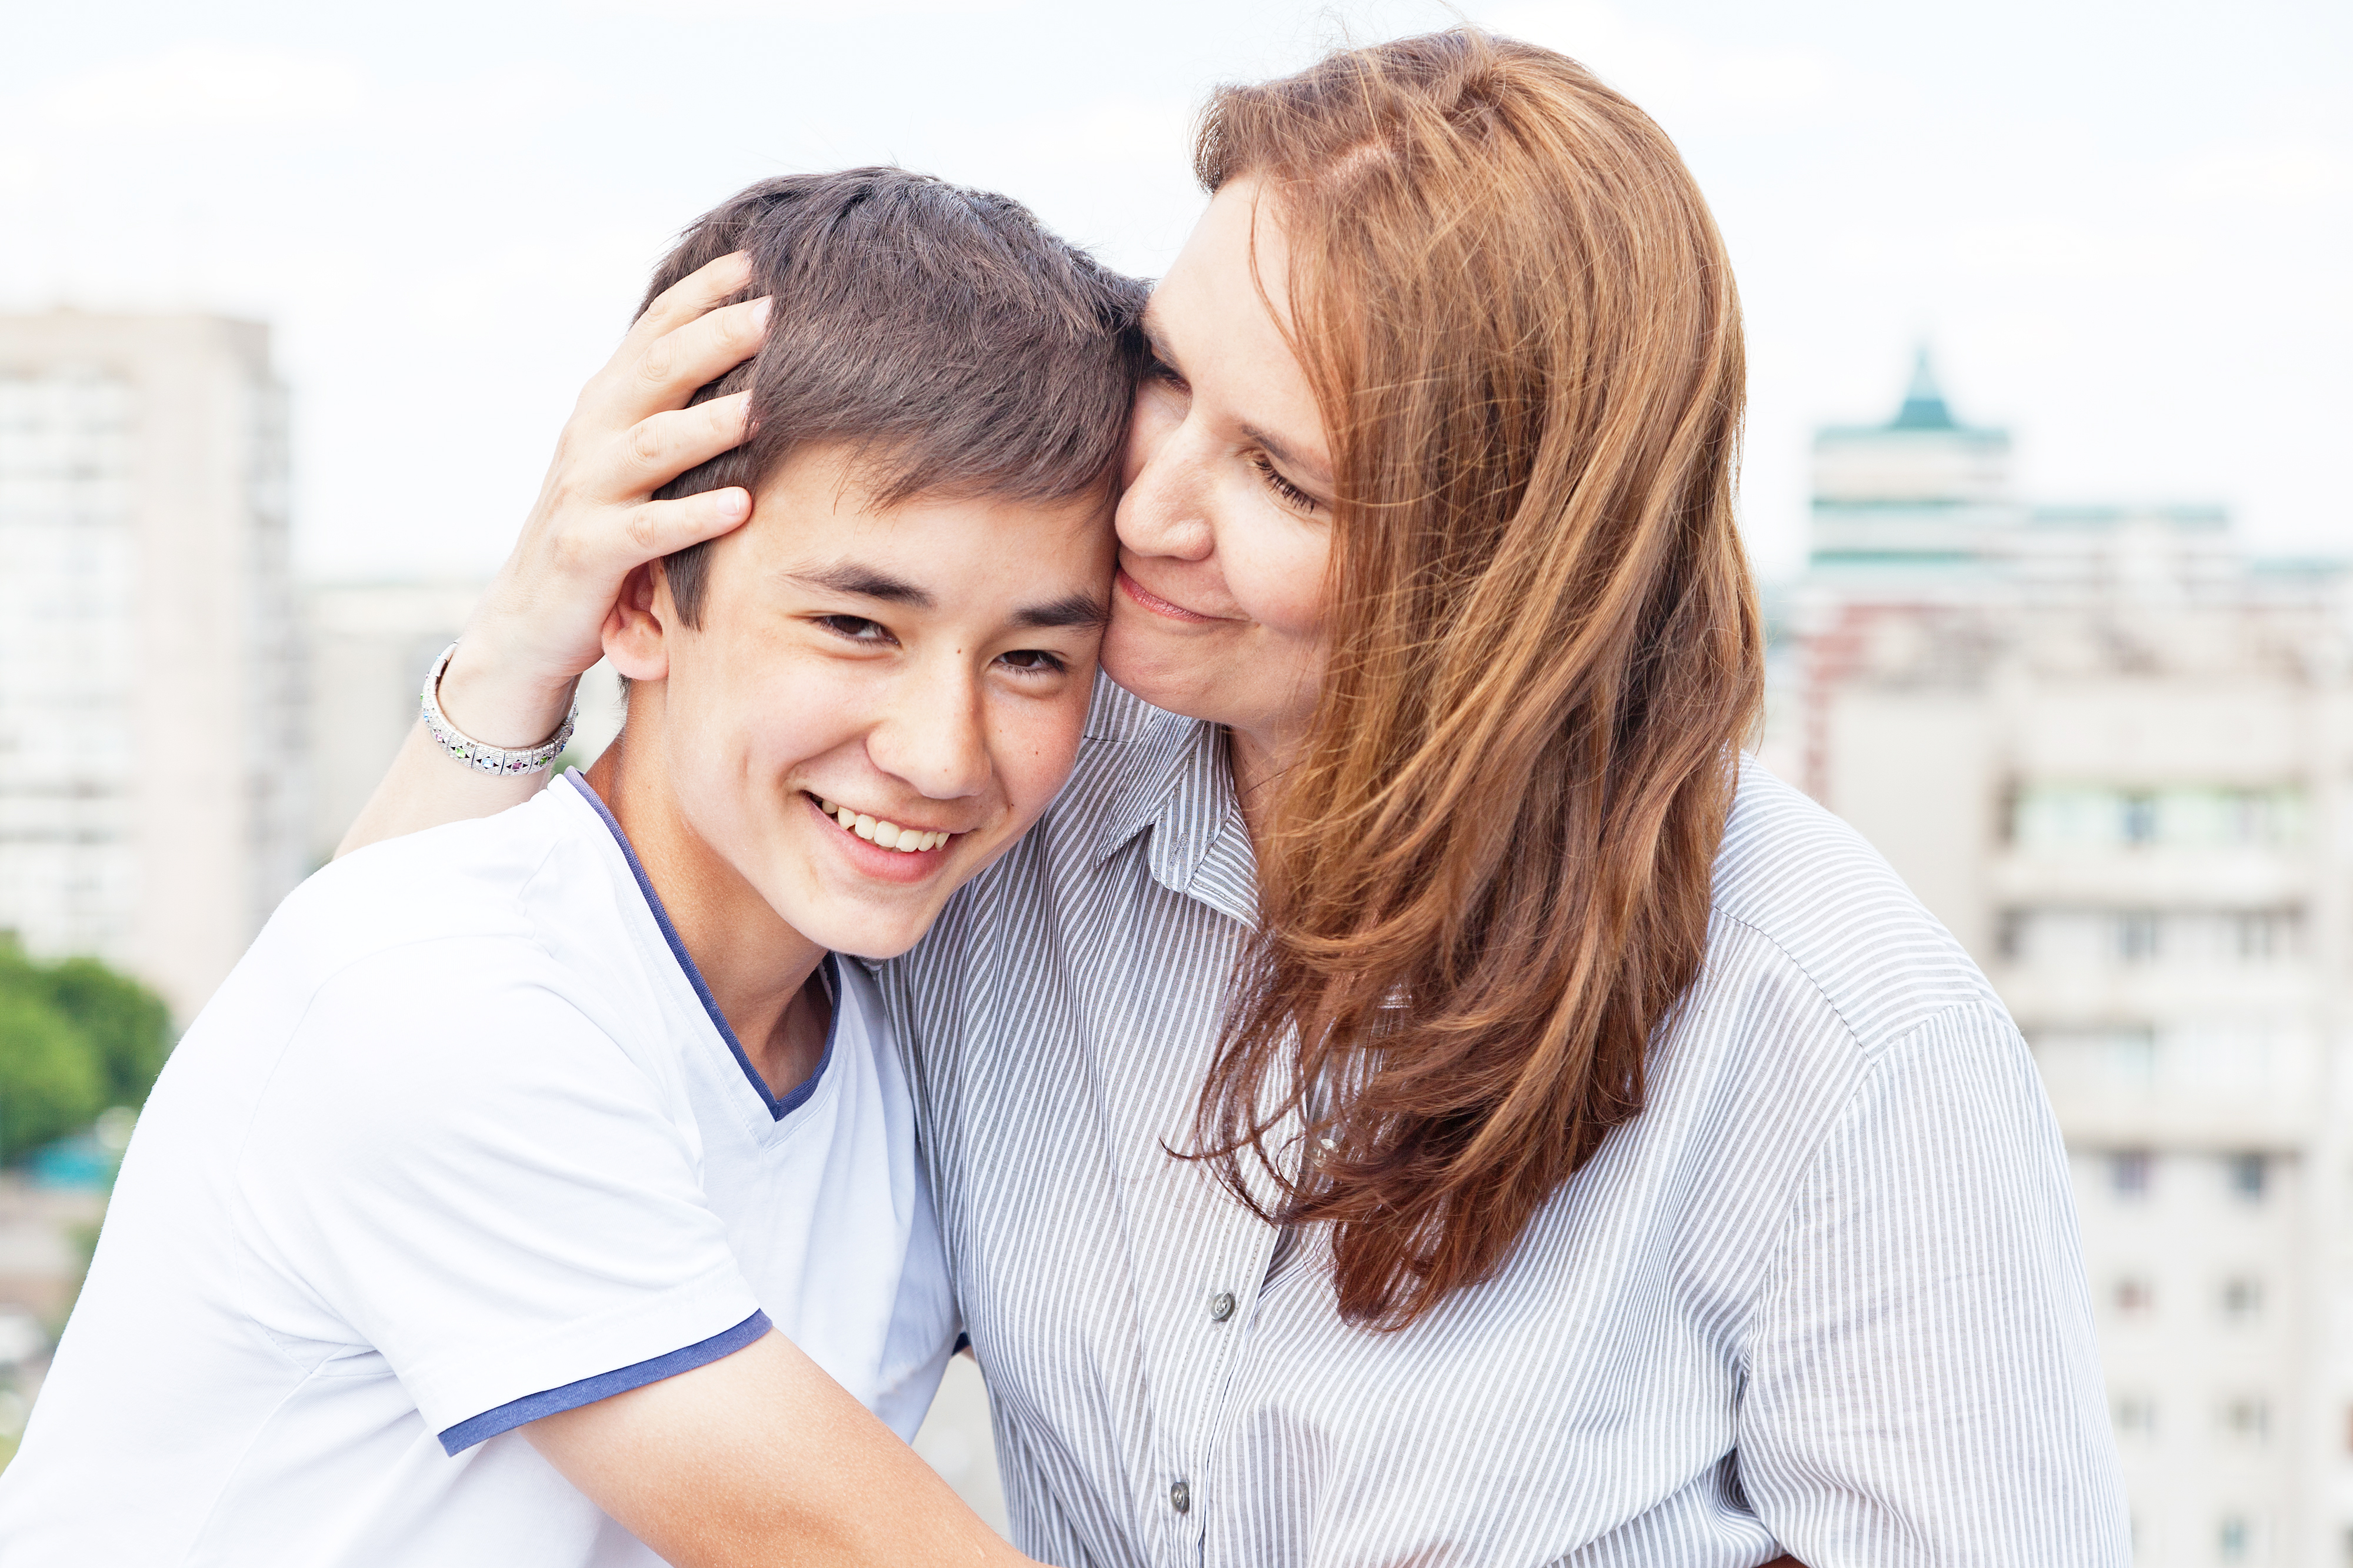 Maman heureuse avec son fils | Source : Shutterstock